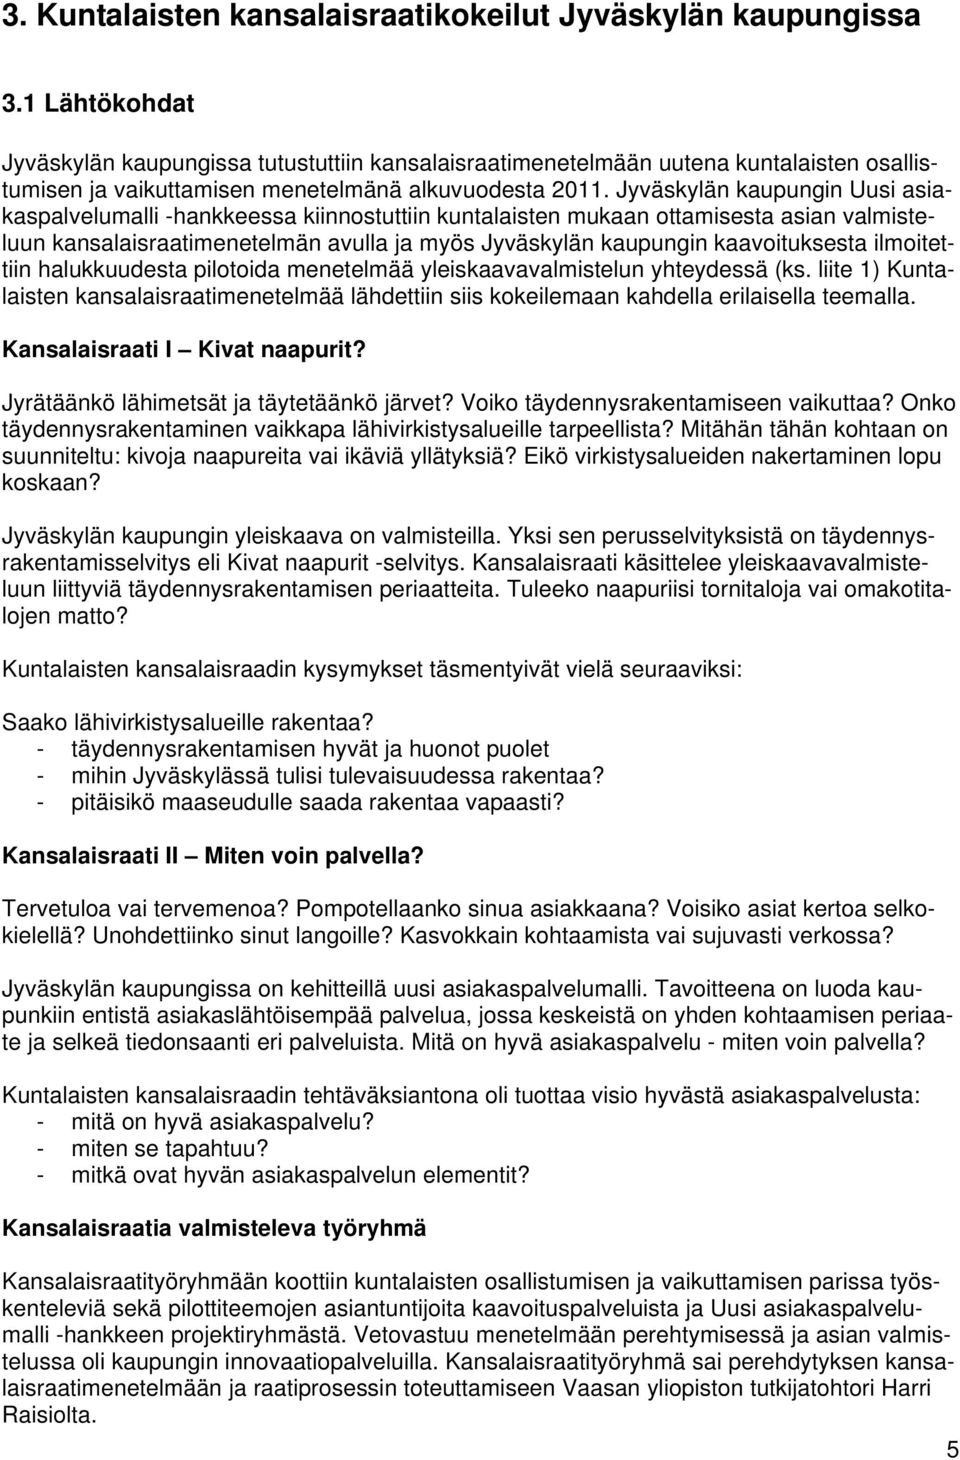 Jyväskylän kaupungin Uusi asiakaspalvelumalli -hankkeessa kiinnostuttiin kuntalaisten mukaan ottamisesta asian valmisteluun kansalaisraatimenetelmän avulla ja myös Jyväskylän kaupungin kaavoituksesta